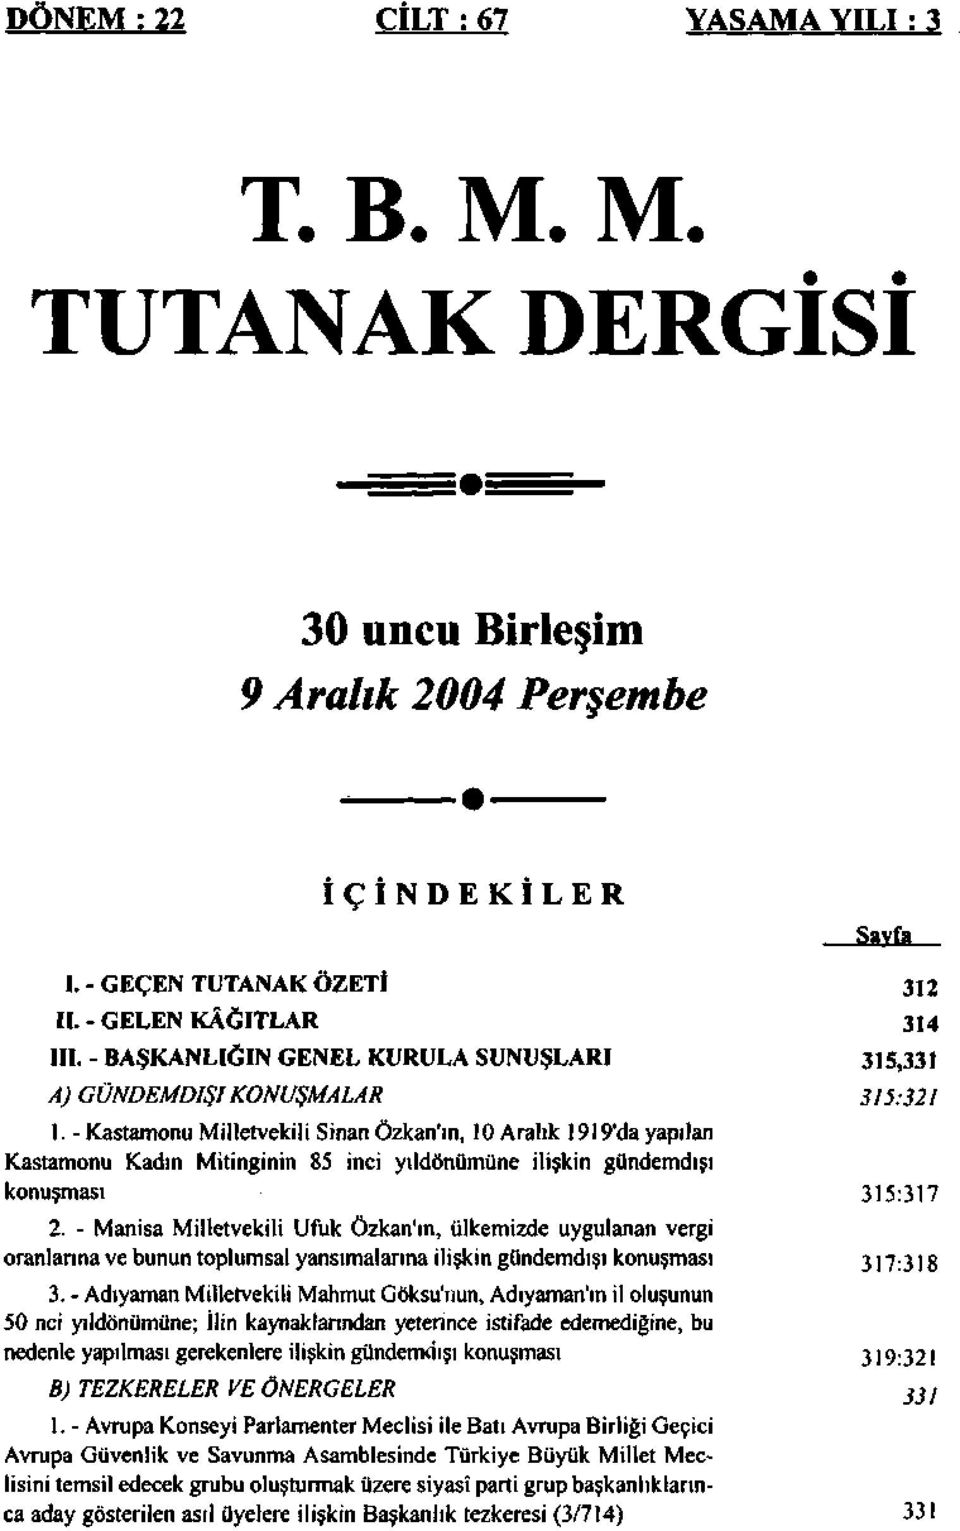 - Kastamonu Milletvekili Sinan Özkan'ın, 10 Aralık 1919'da yapılan Kastamonu Kadın Mitinginin 85 inci yıldönümüne ilişkin gündemdışı konuşması 2.